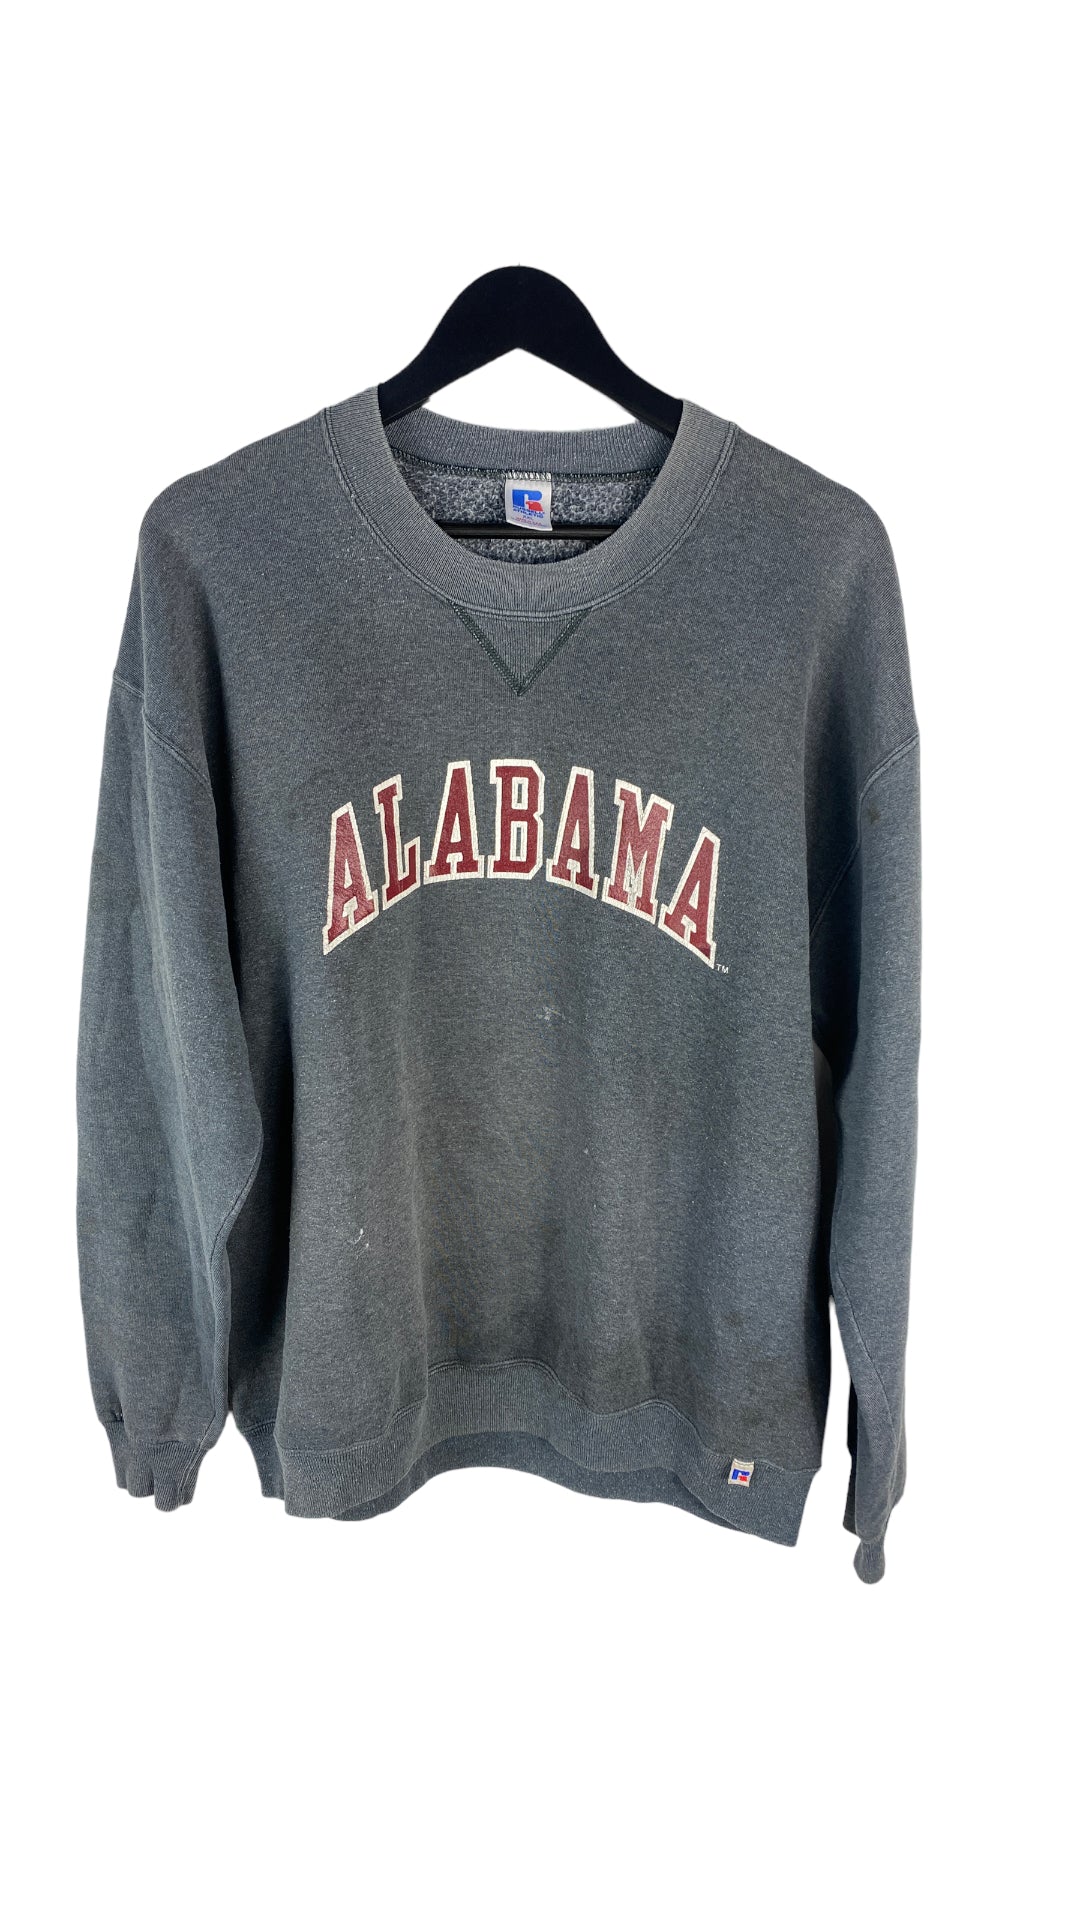 Vtg Russell Alabama Sweater Sz XL